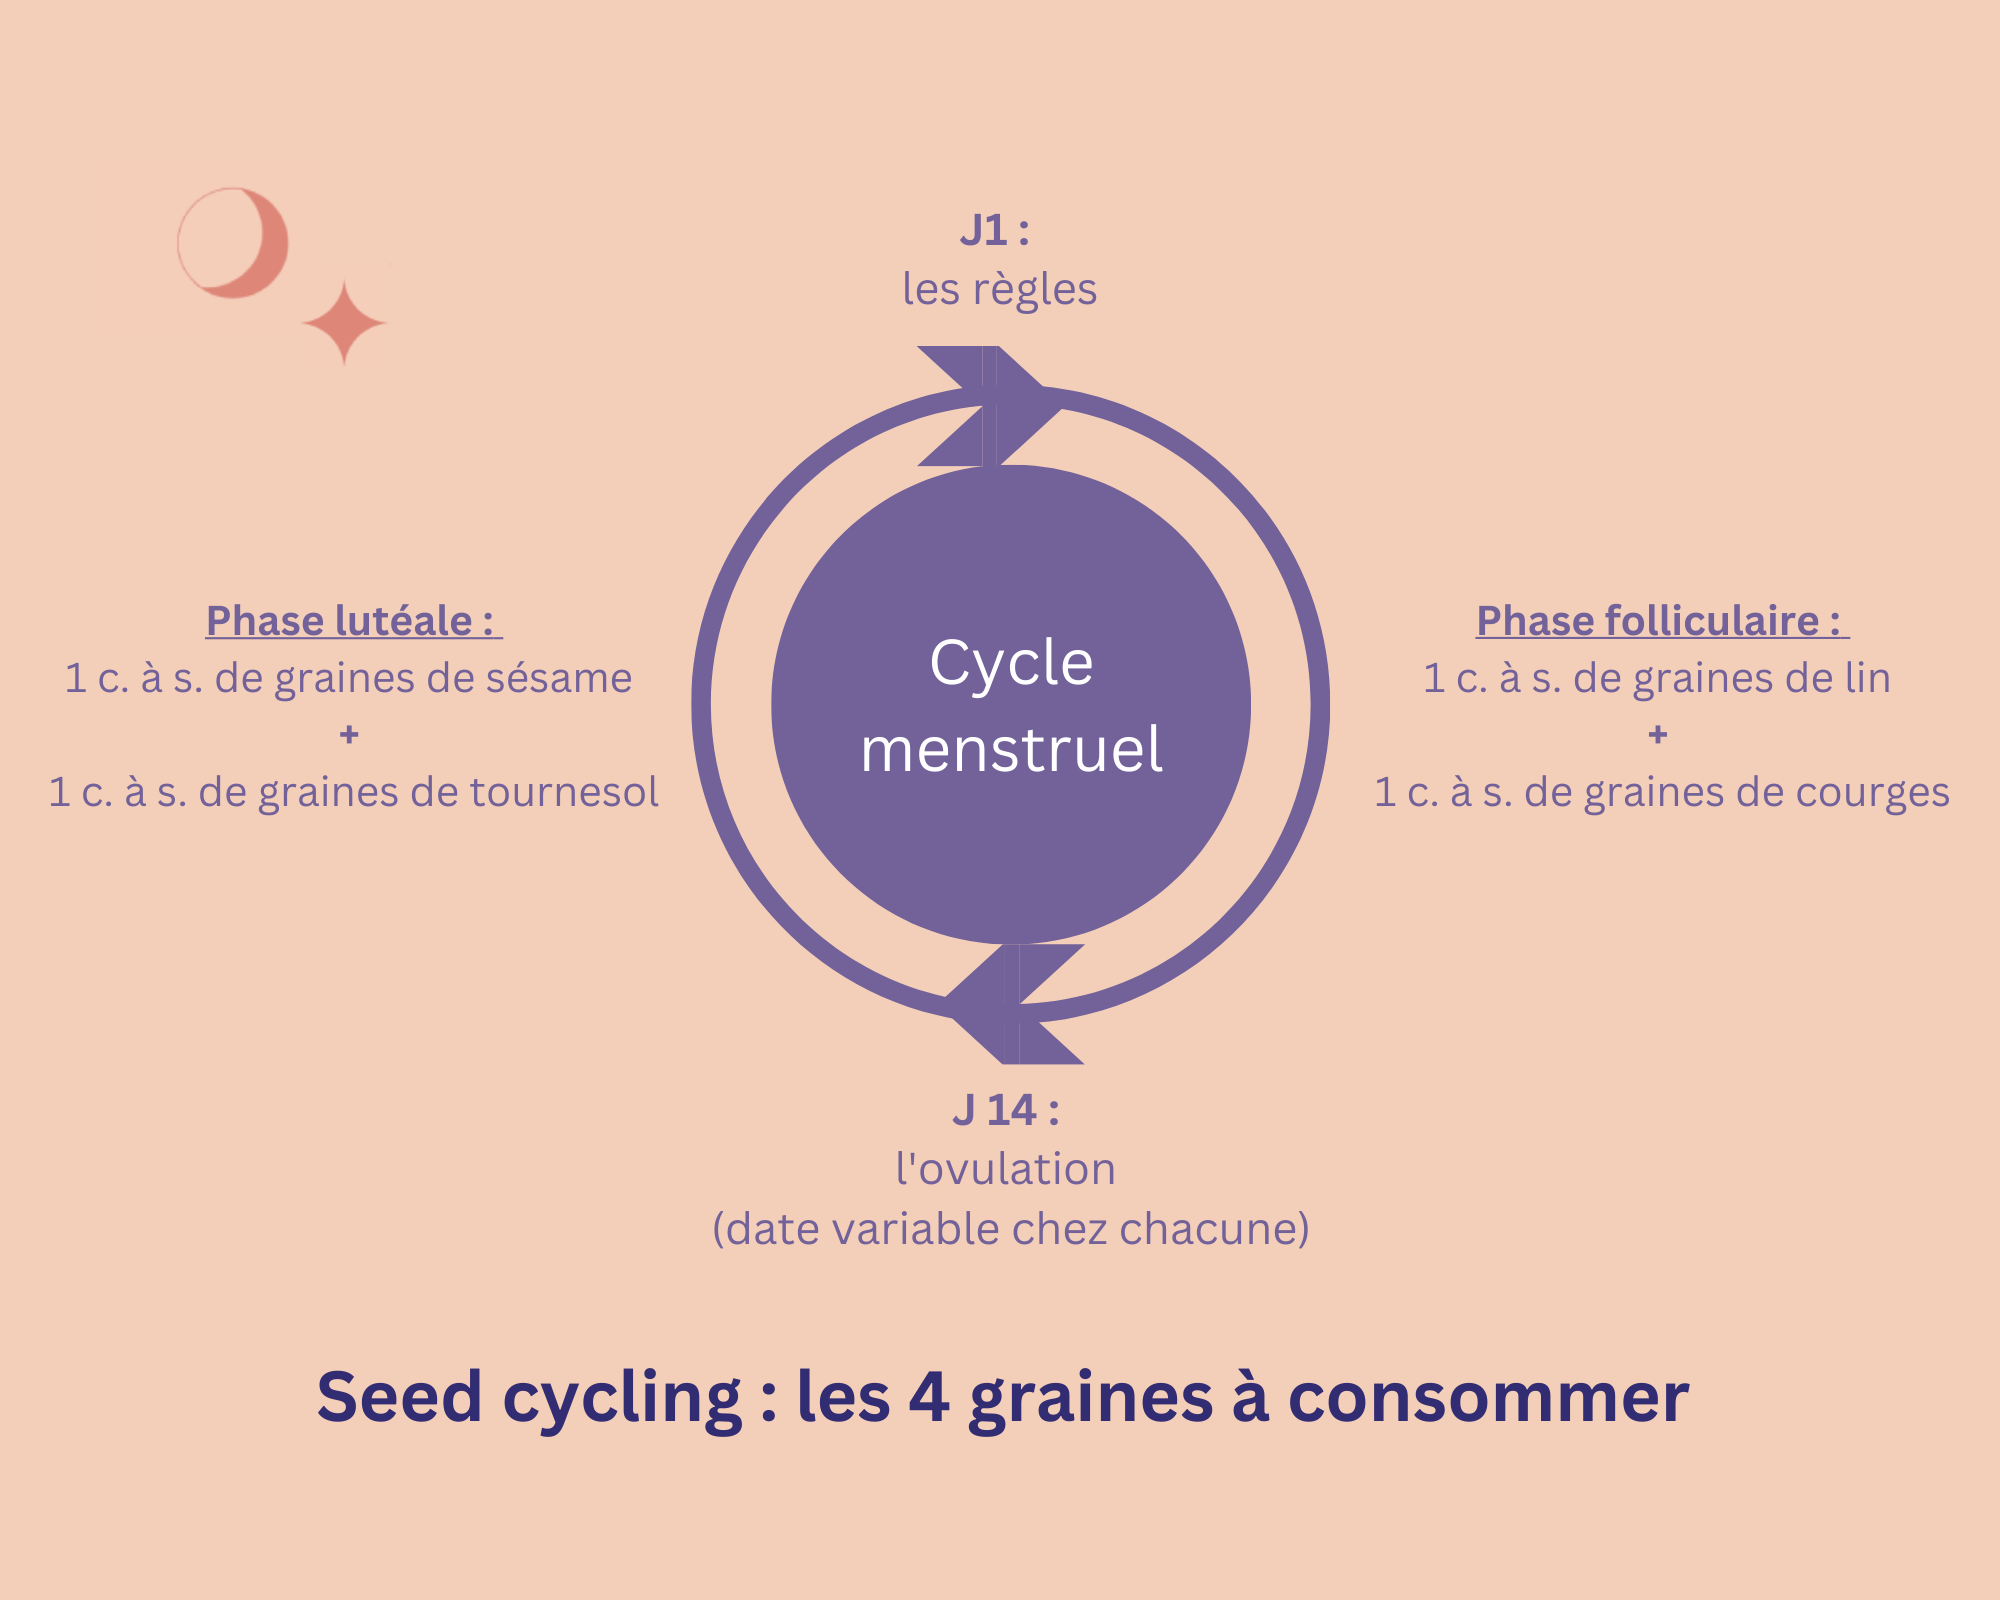 Diagramme indiquant les graines à consommer selon les phases du cycle menstruel